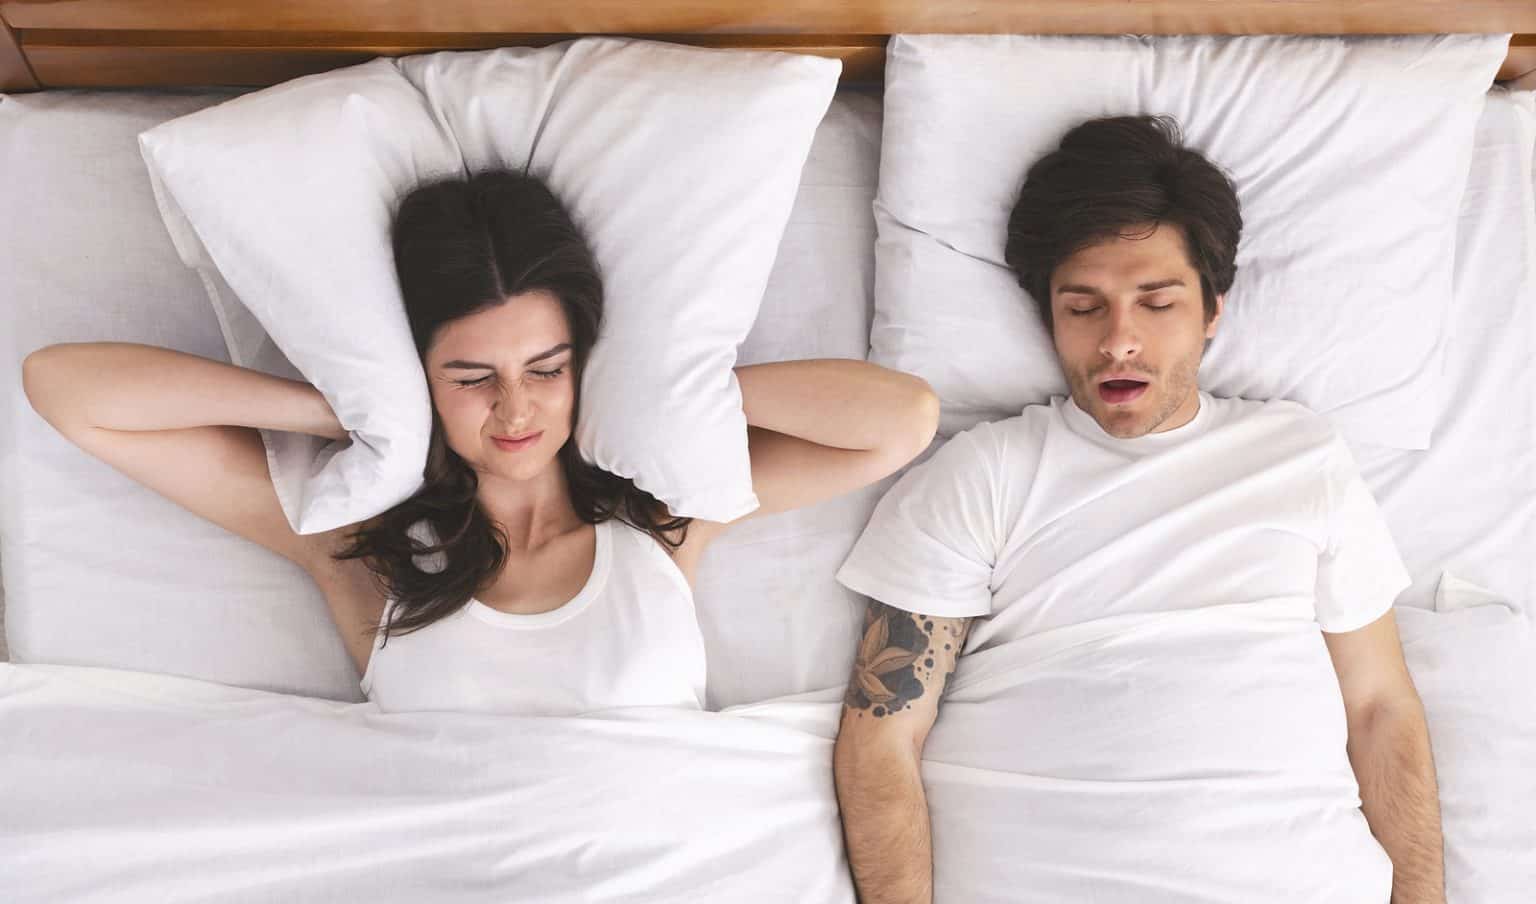 The Link Between Snoring & Cavities